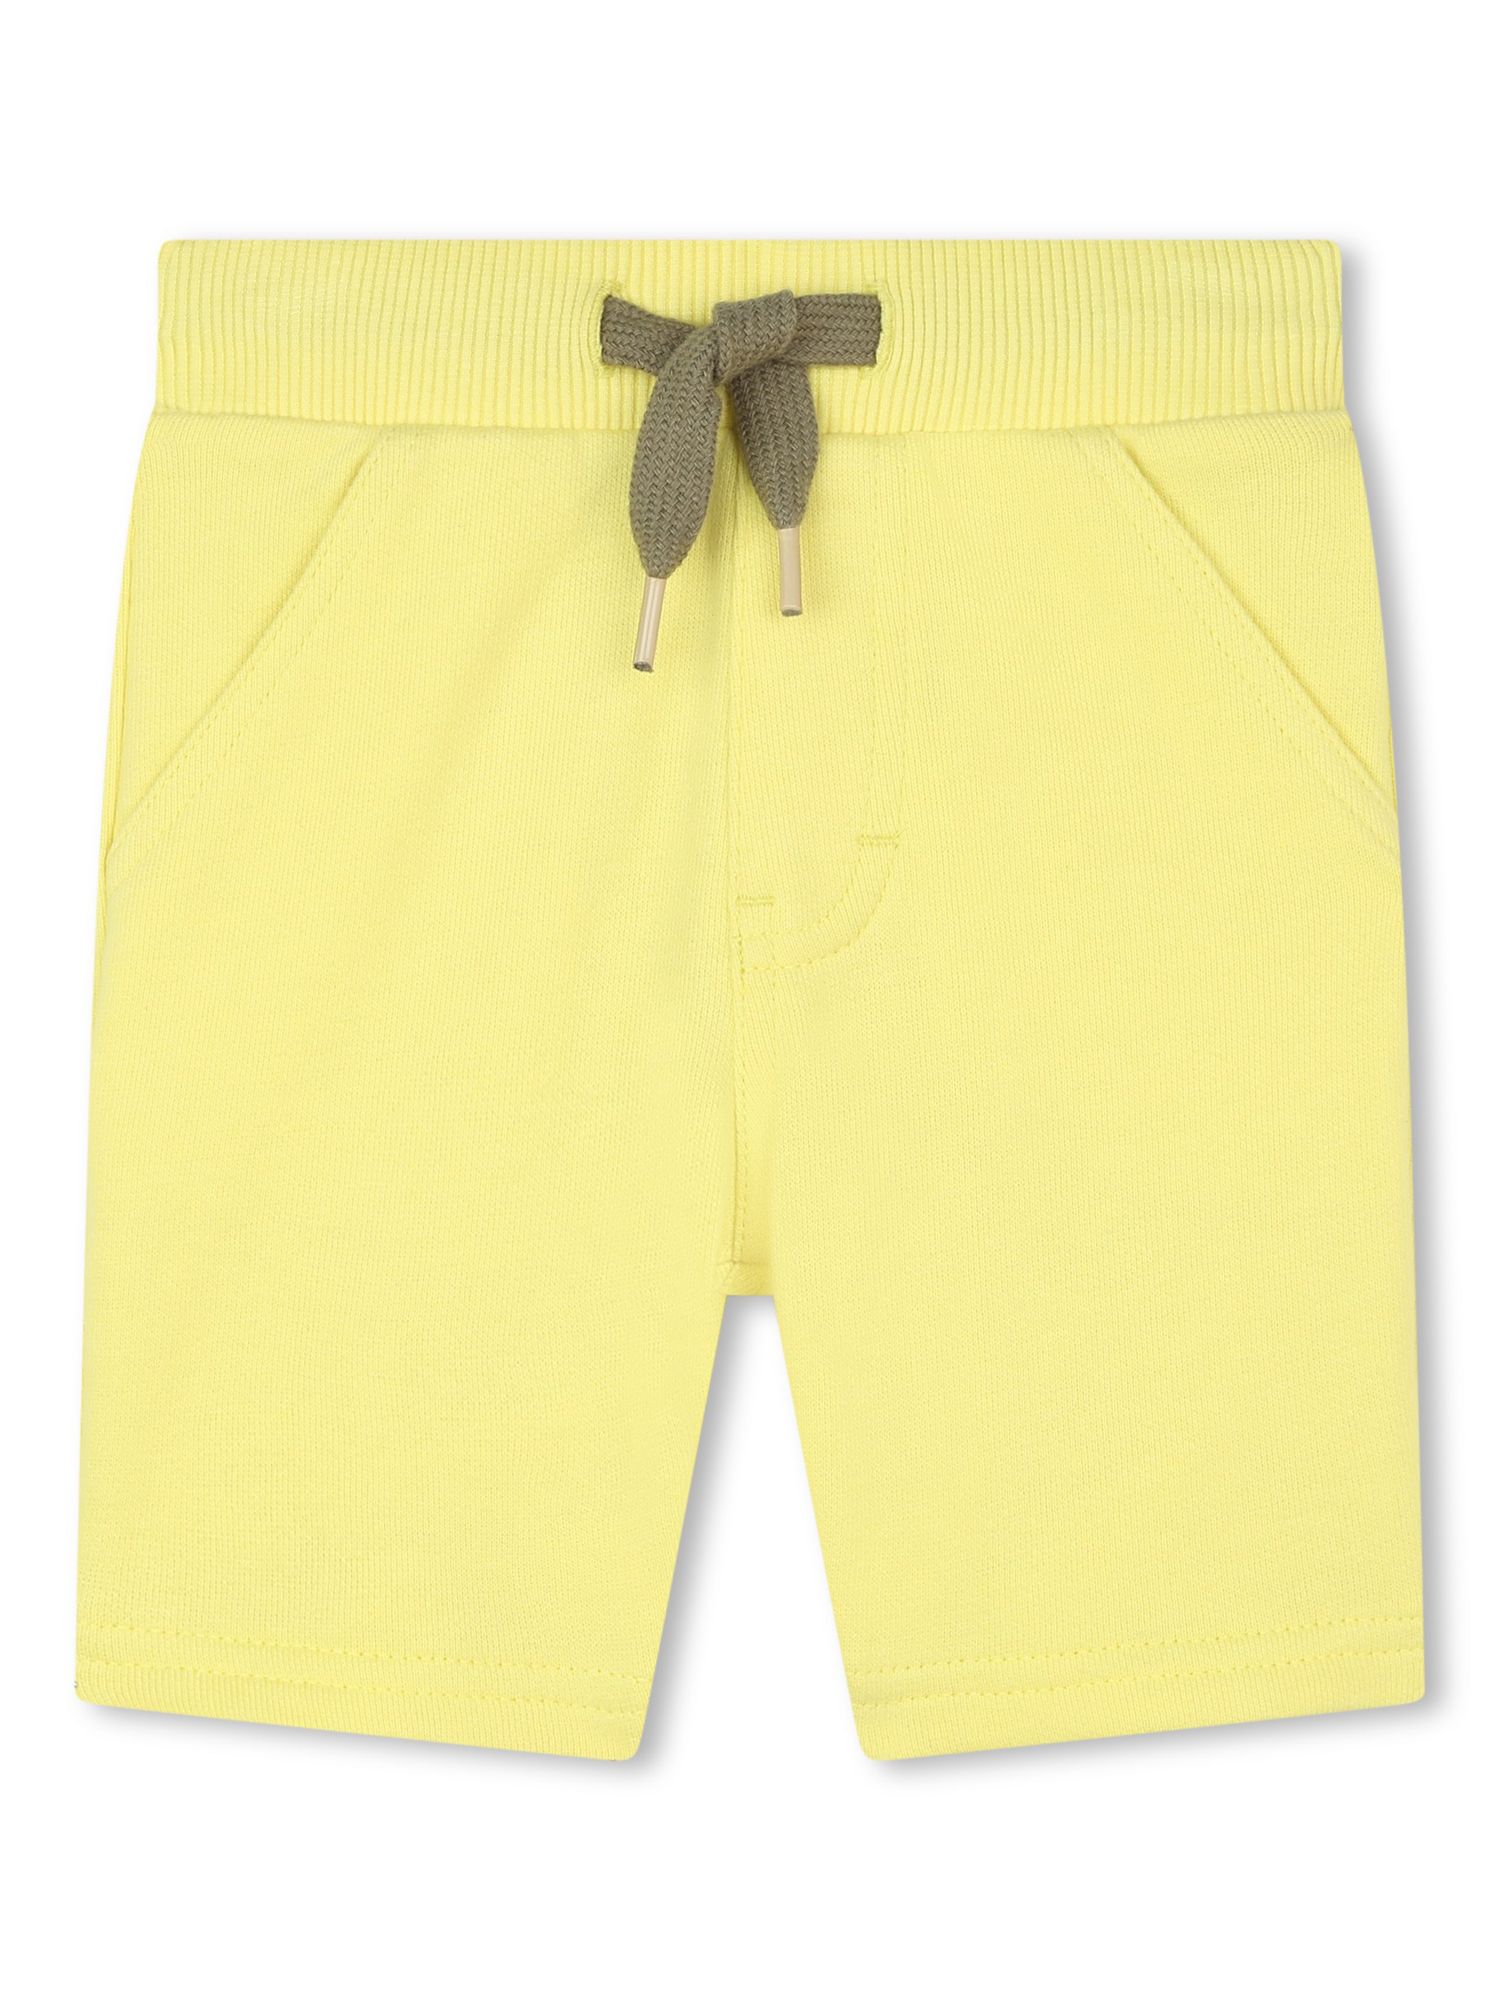 Timberland Baby Logo T-Shirt & Shorts Set, White/Yellow, 2 years